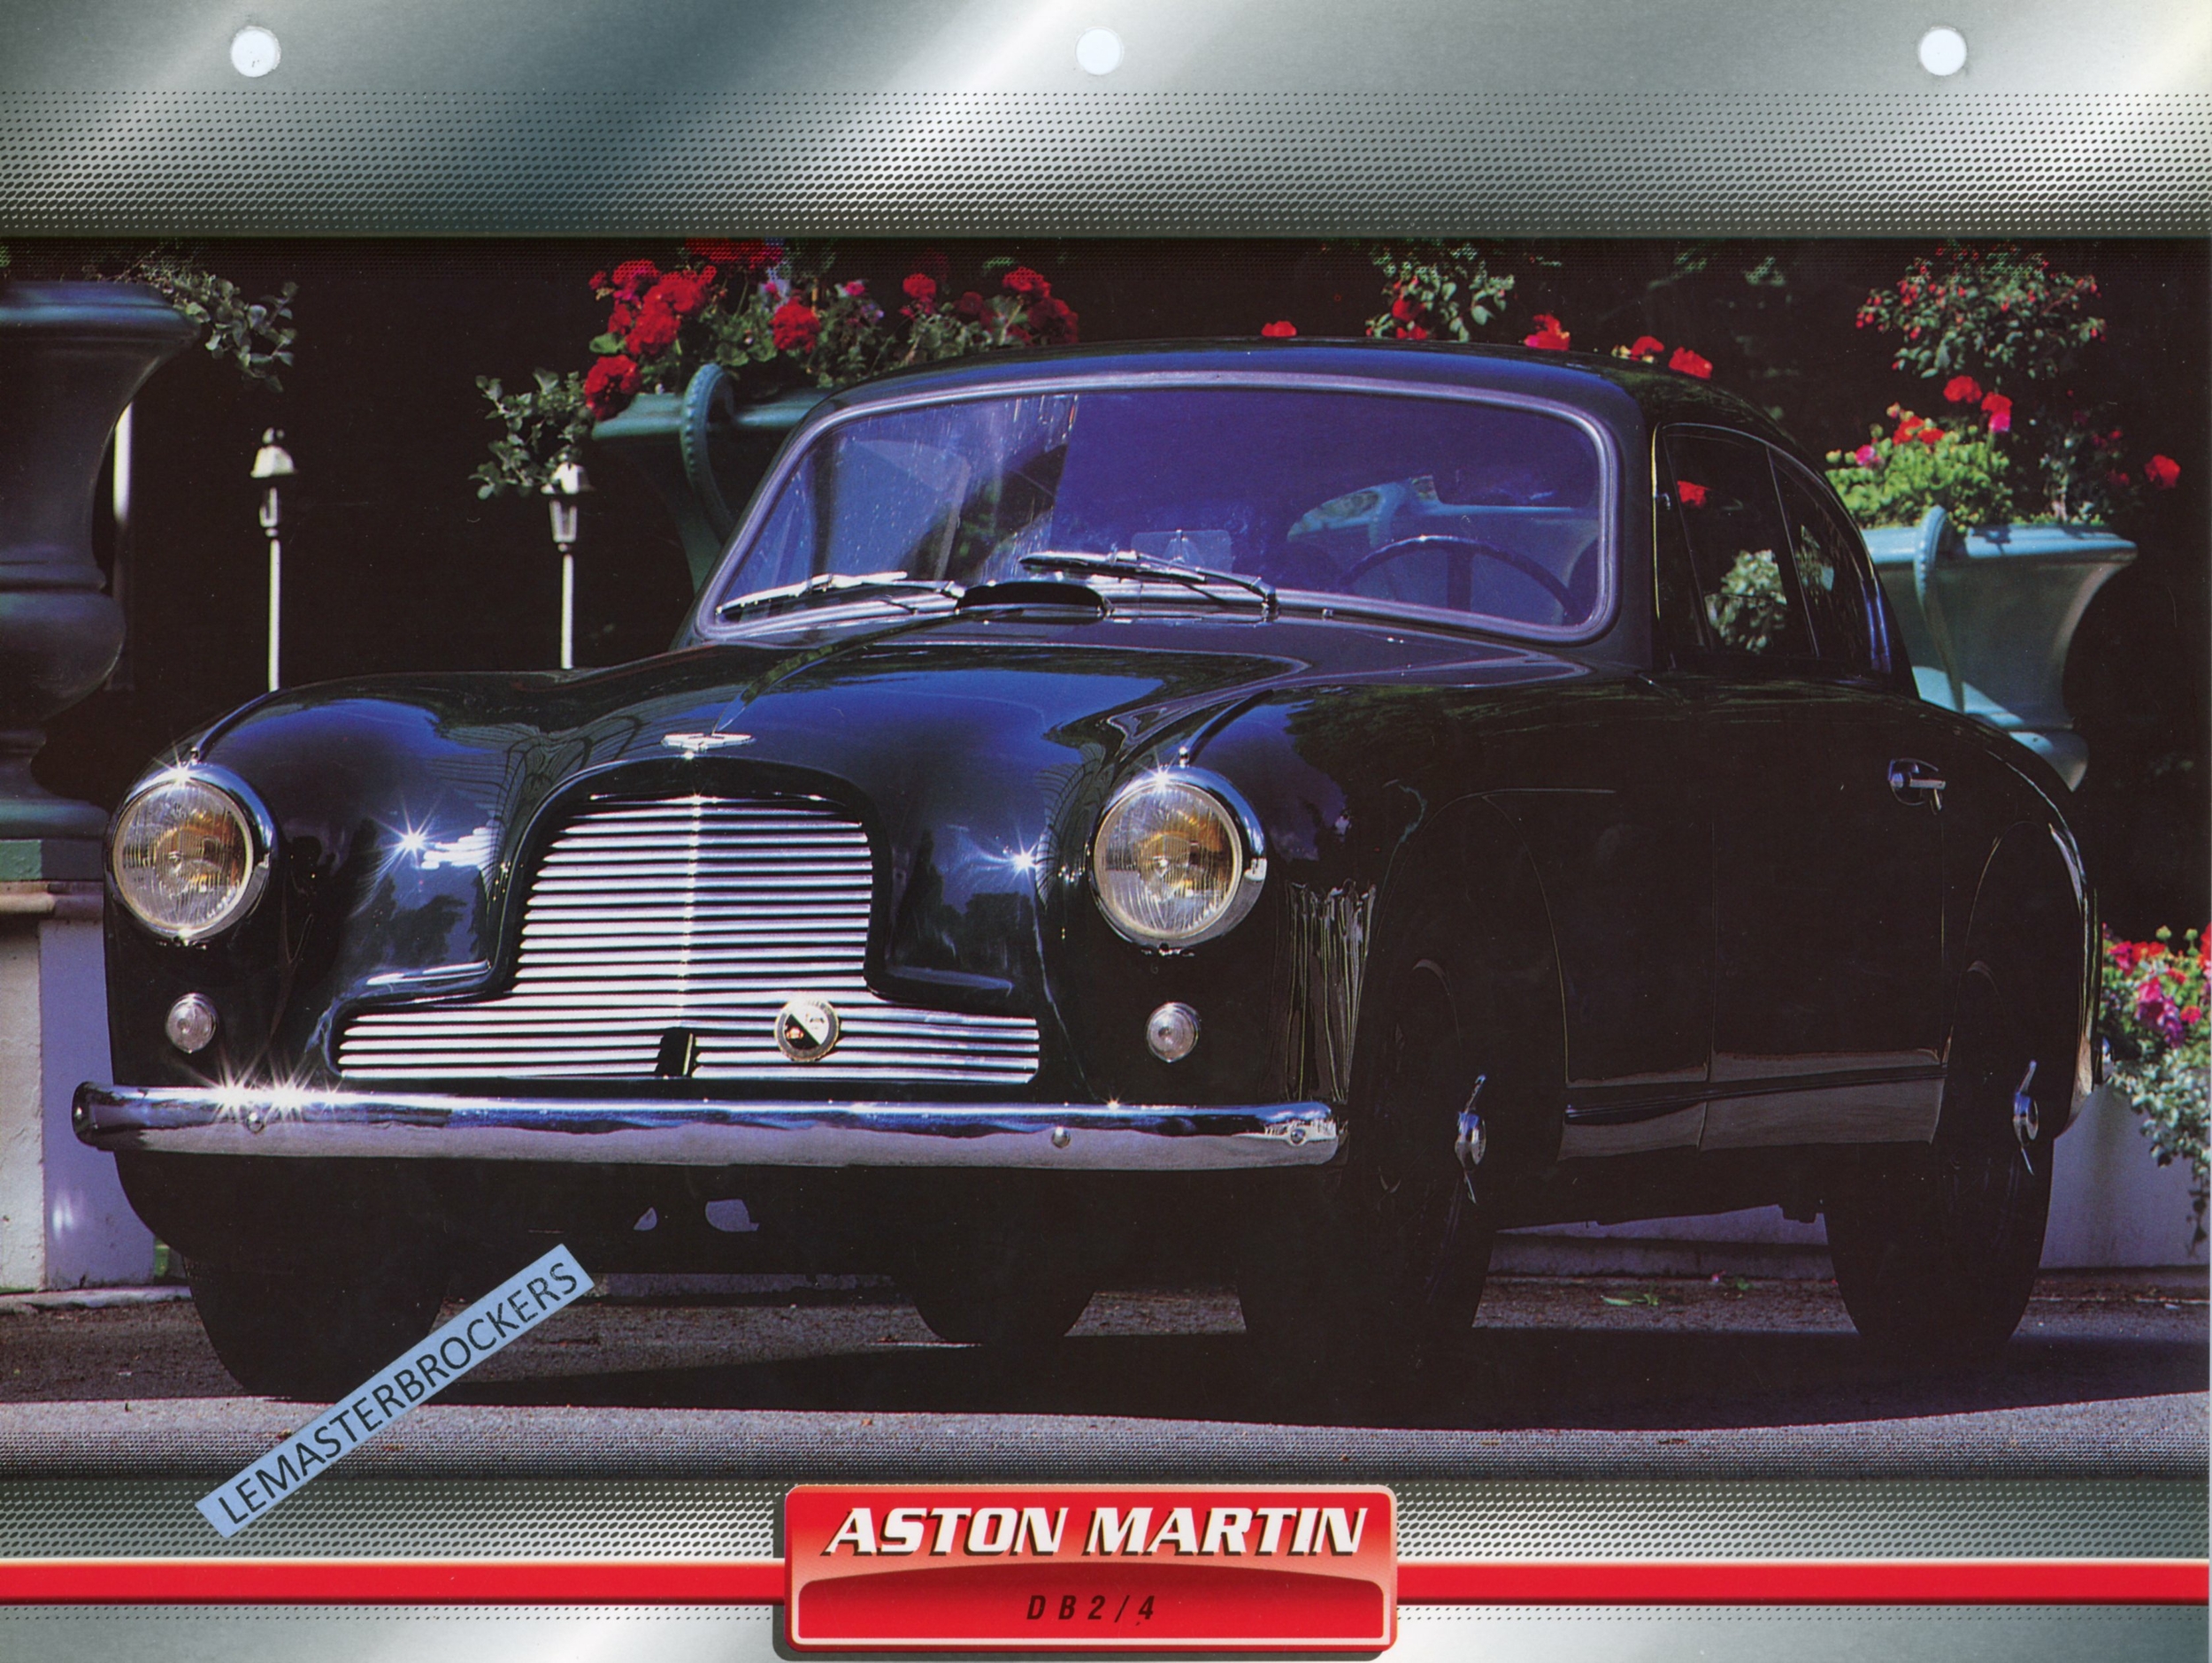 ASTON-MARTIN-DB2/4-1953-FICHE-AUTO-TECHNIQUE-LEMASTERBROCKERS-FICHE-ATLAS